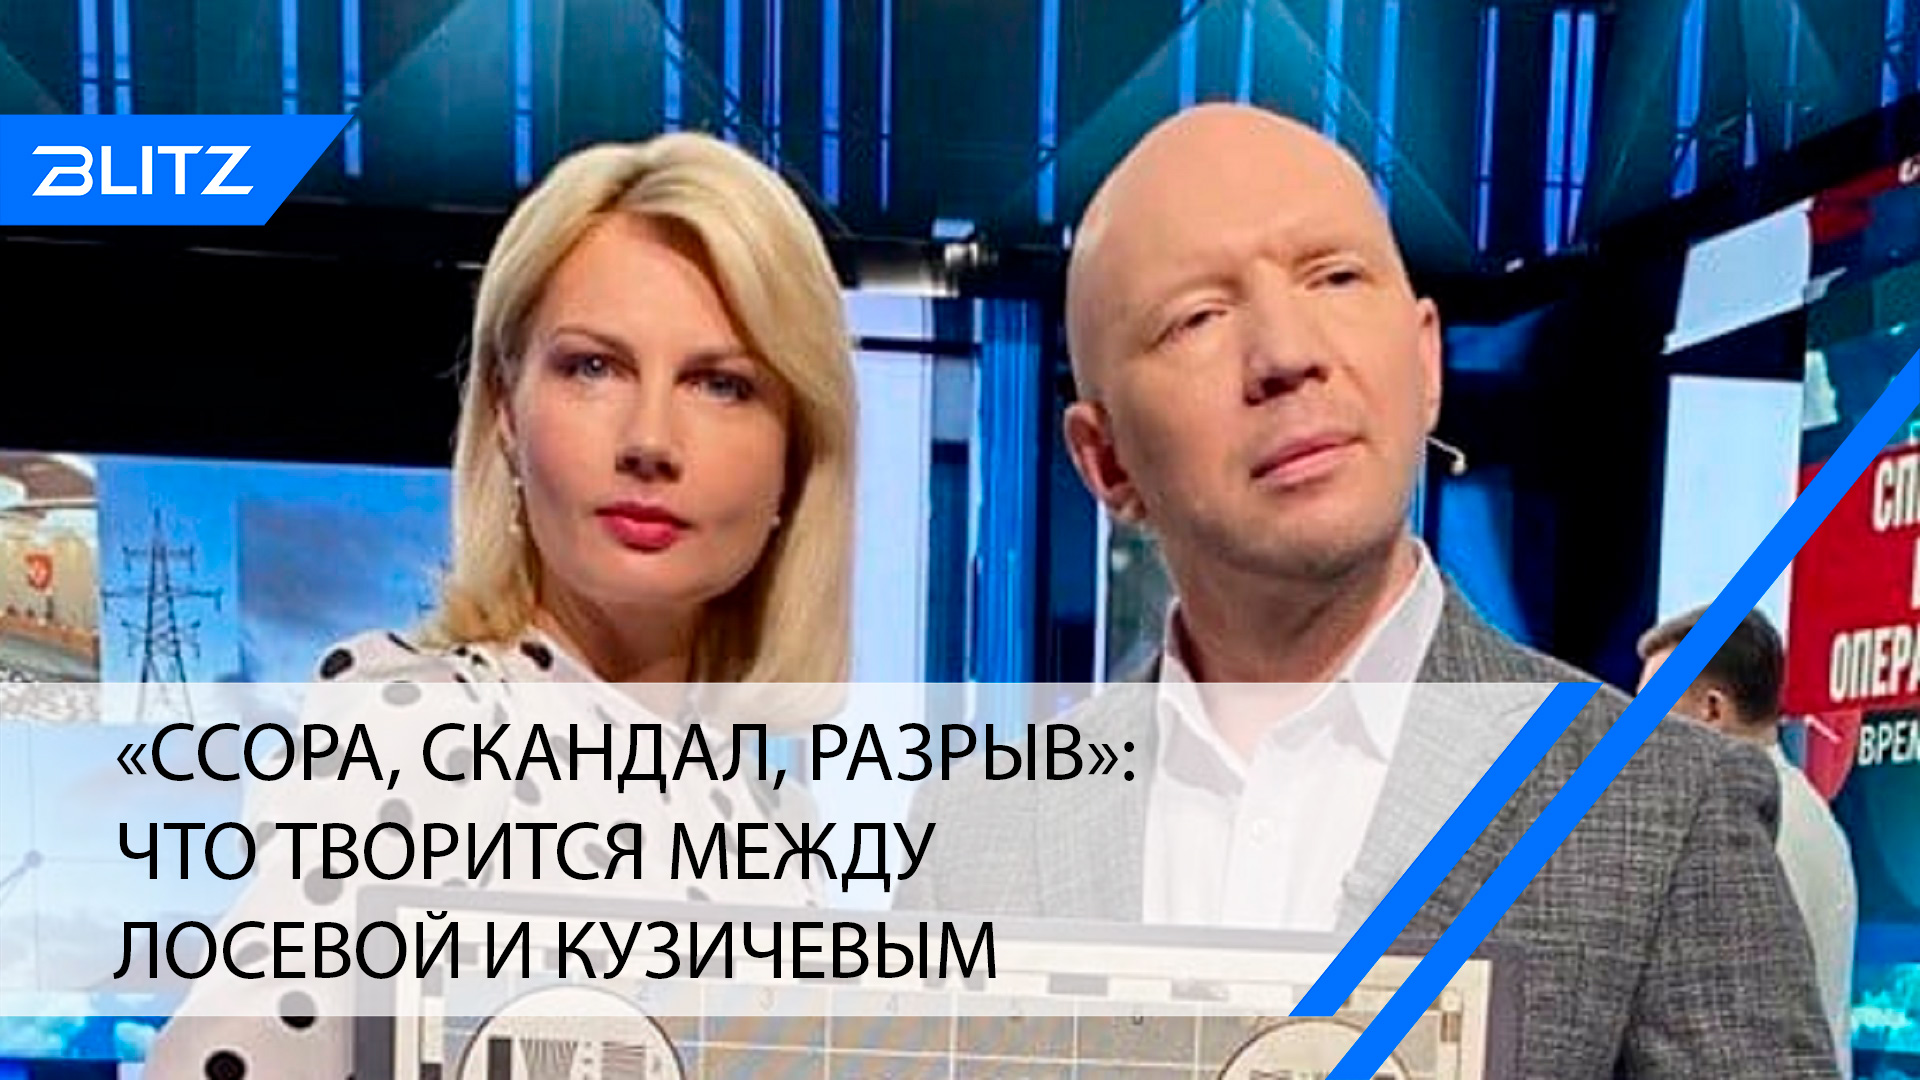 Ведущий 1 канала Анатолий Кузичев